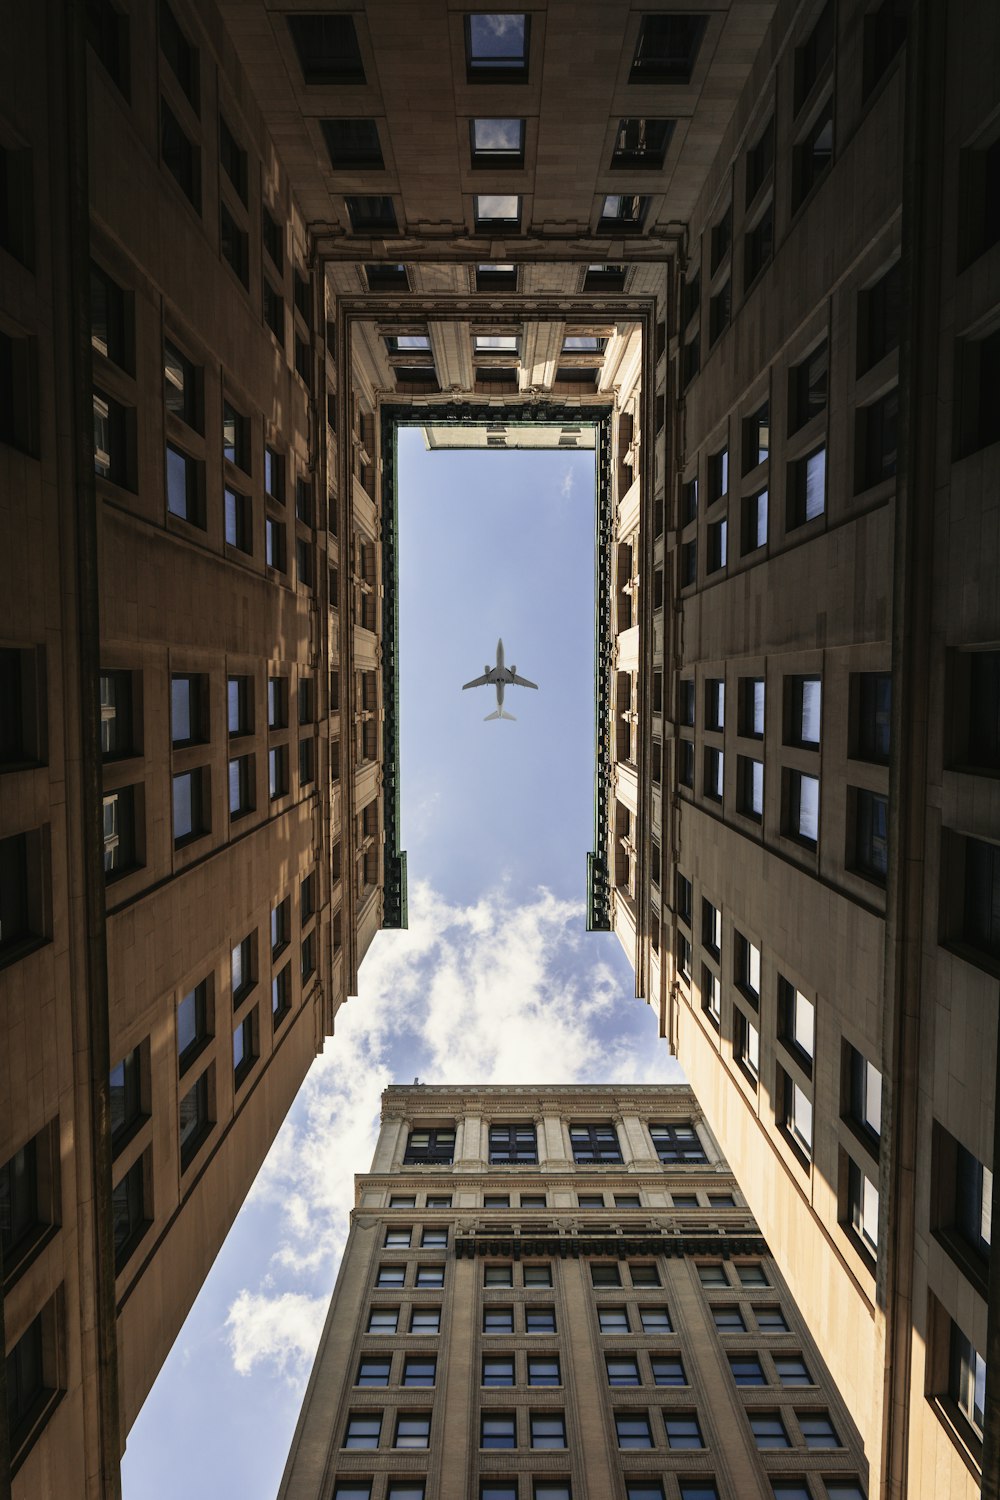 Flugzeug fliegt auf Hochhäusern